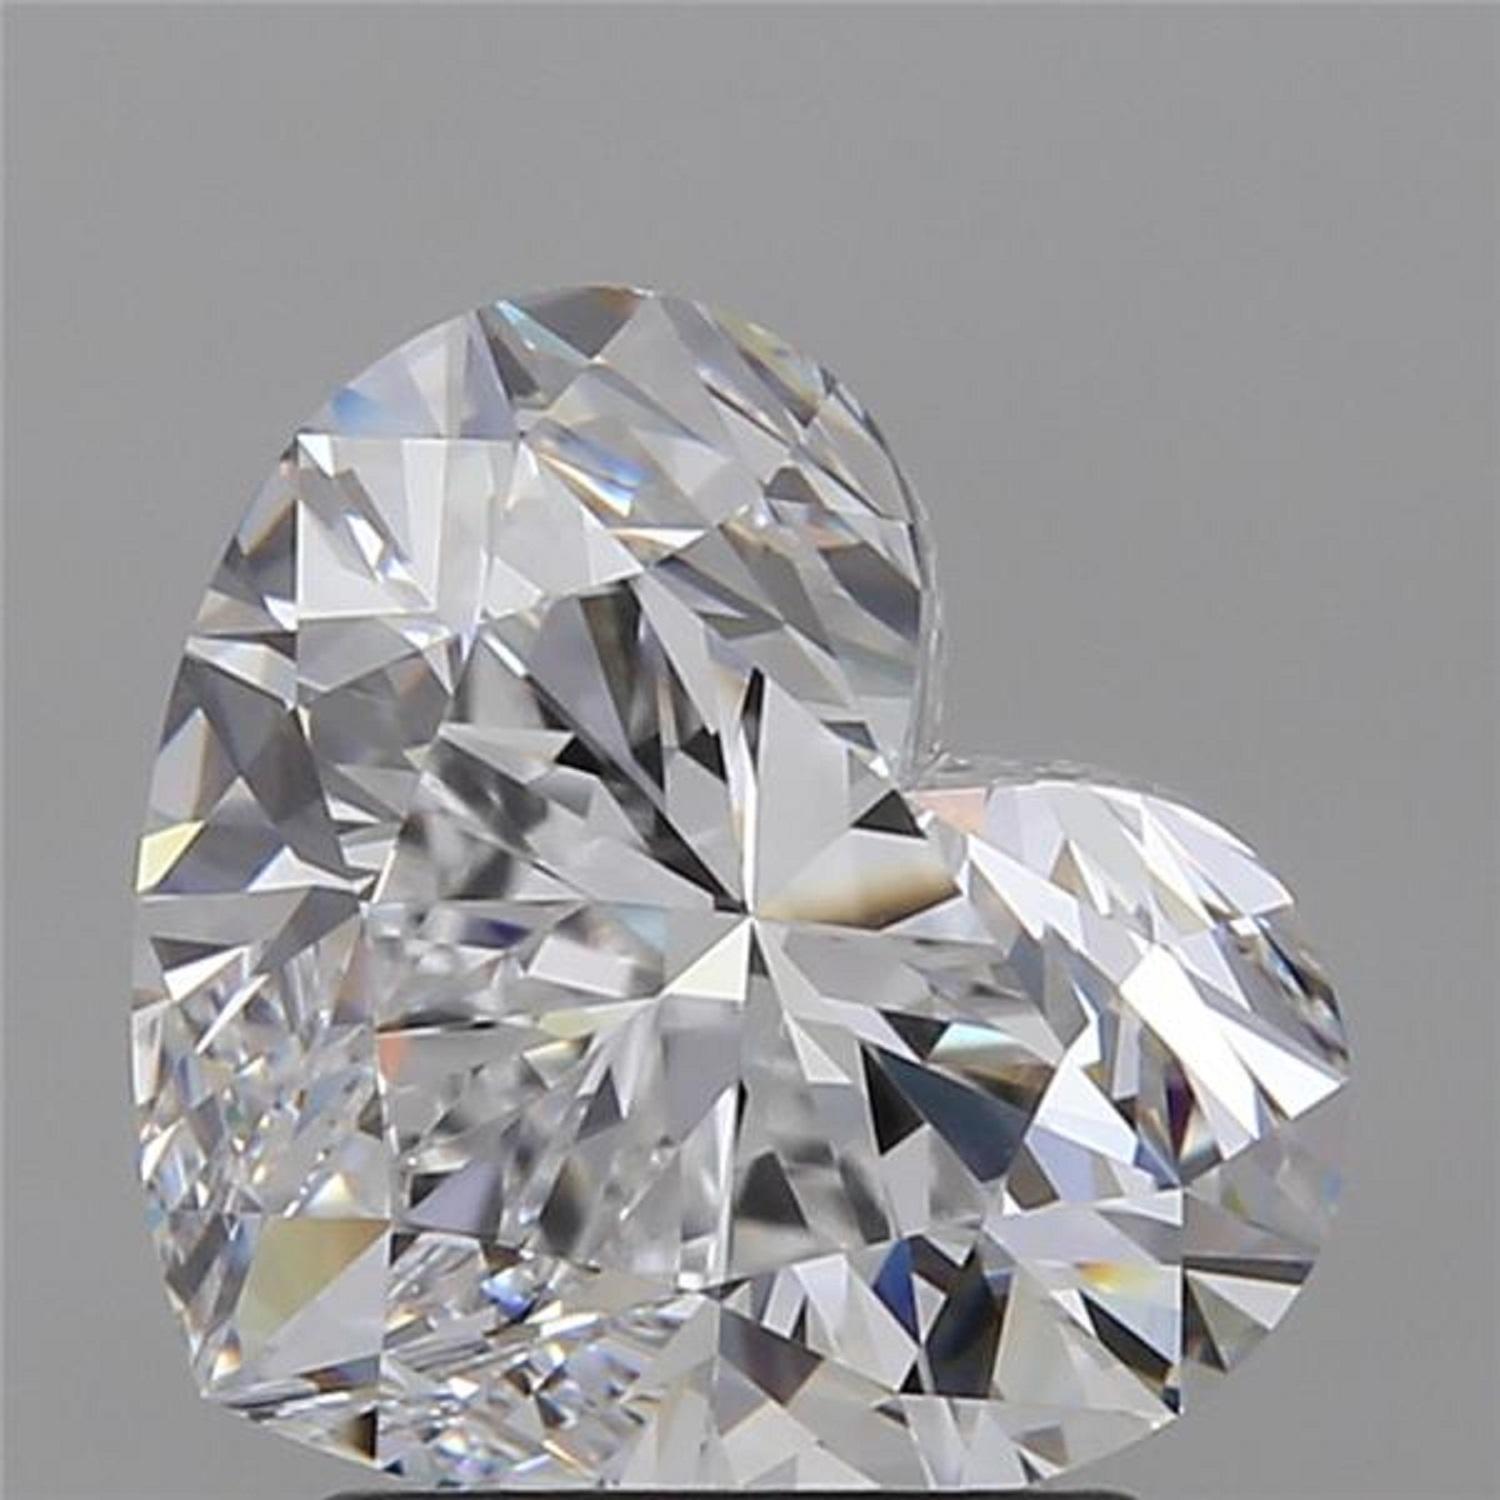 Un exquis diamant certifié de 8 carats en forme de cœur, d'une grande pureté et plein de vie ! 

Le diamant a été certifié par la GIA

en platine massif. L'anneau est redimensionnable, voire personnalisable 
